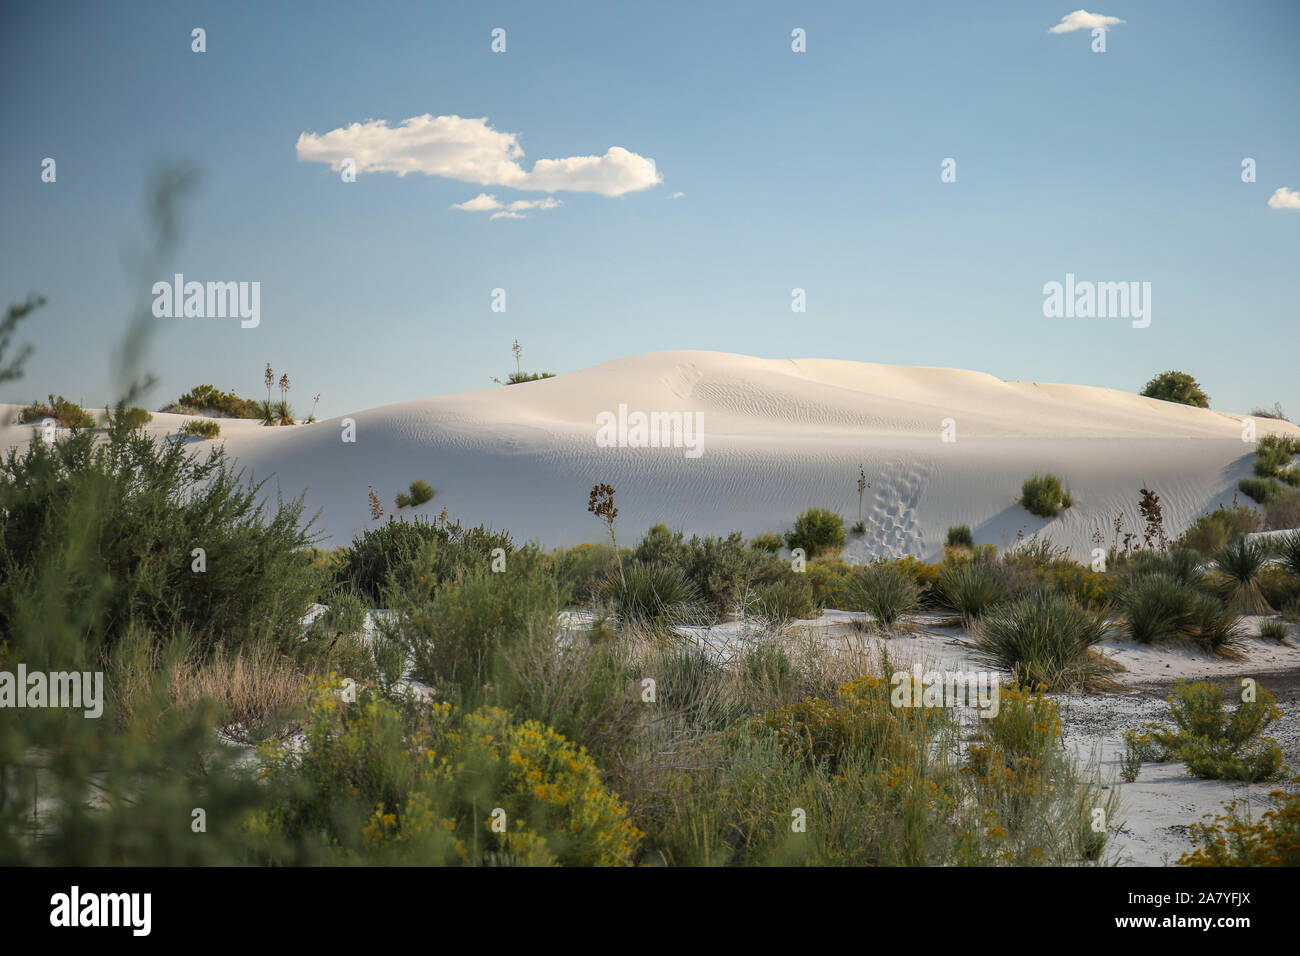 Avant-plan vert avec les dunes blanches de sable blanc derrière Banque D'Images